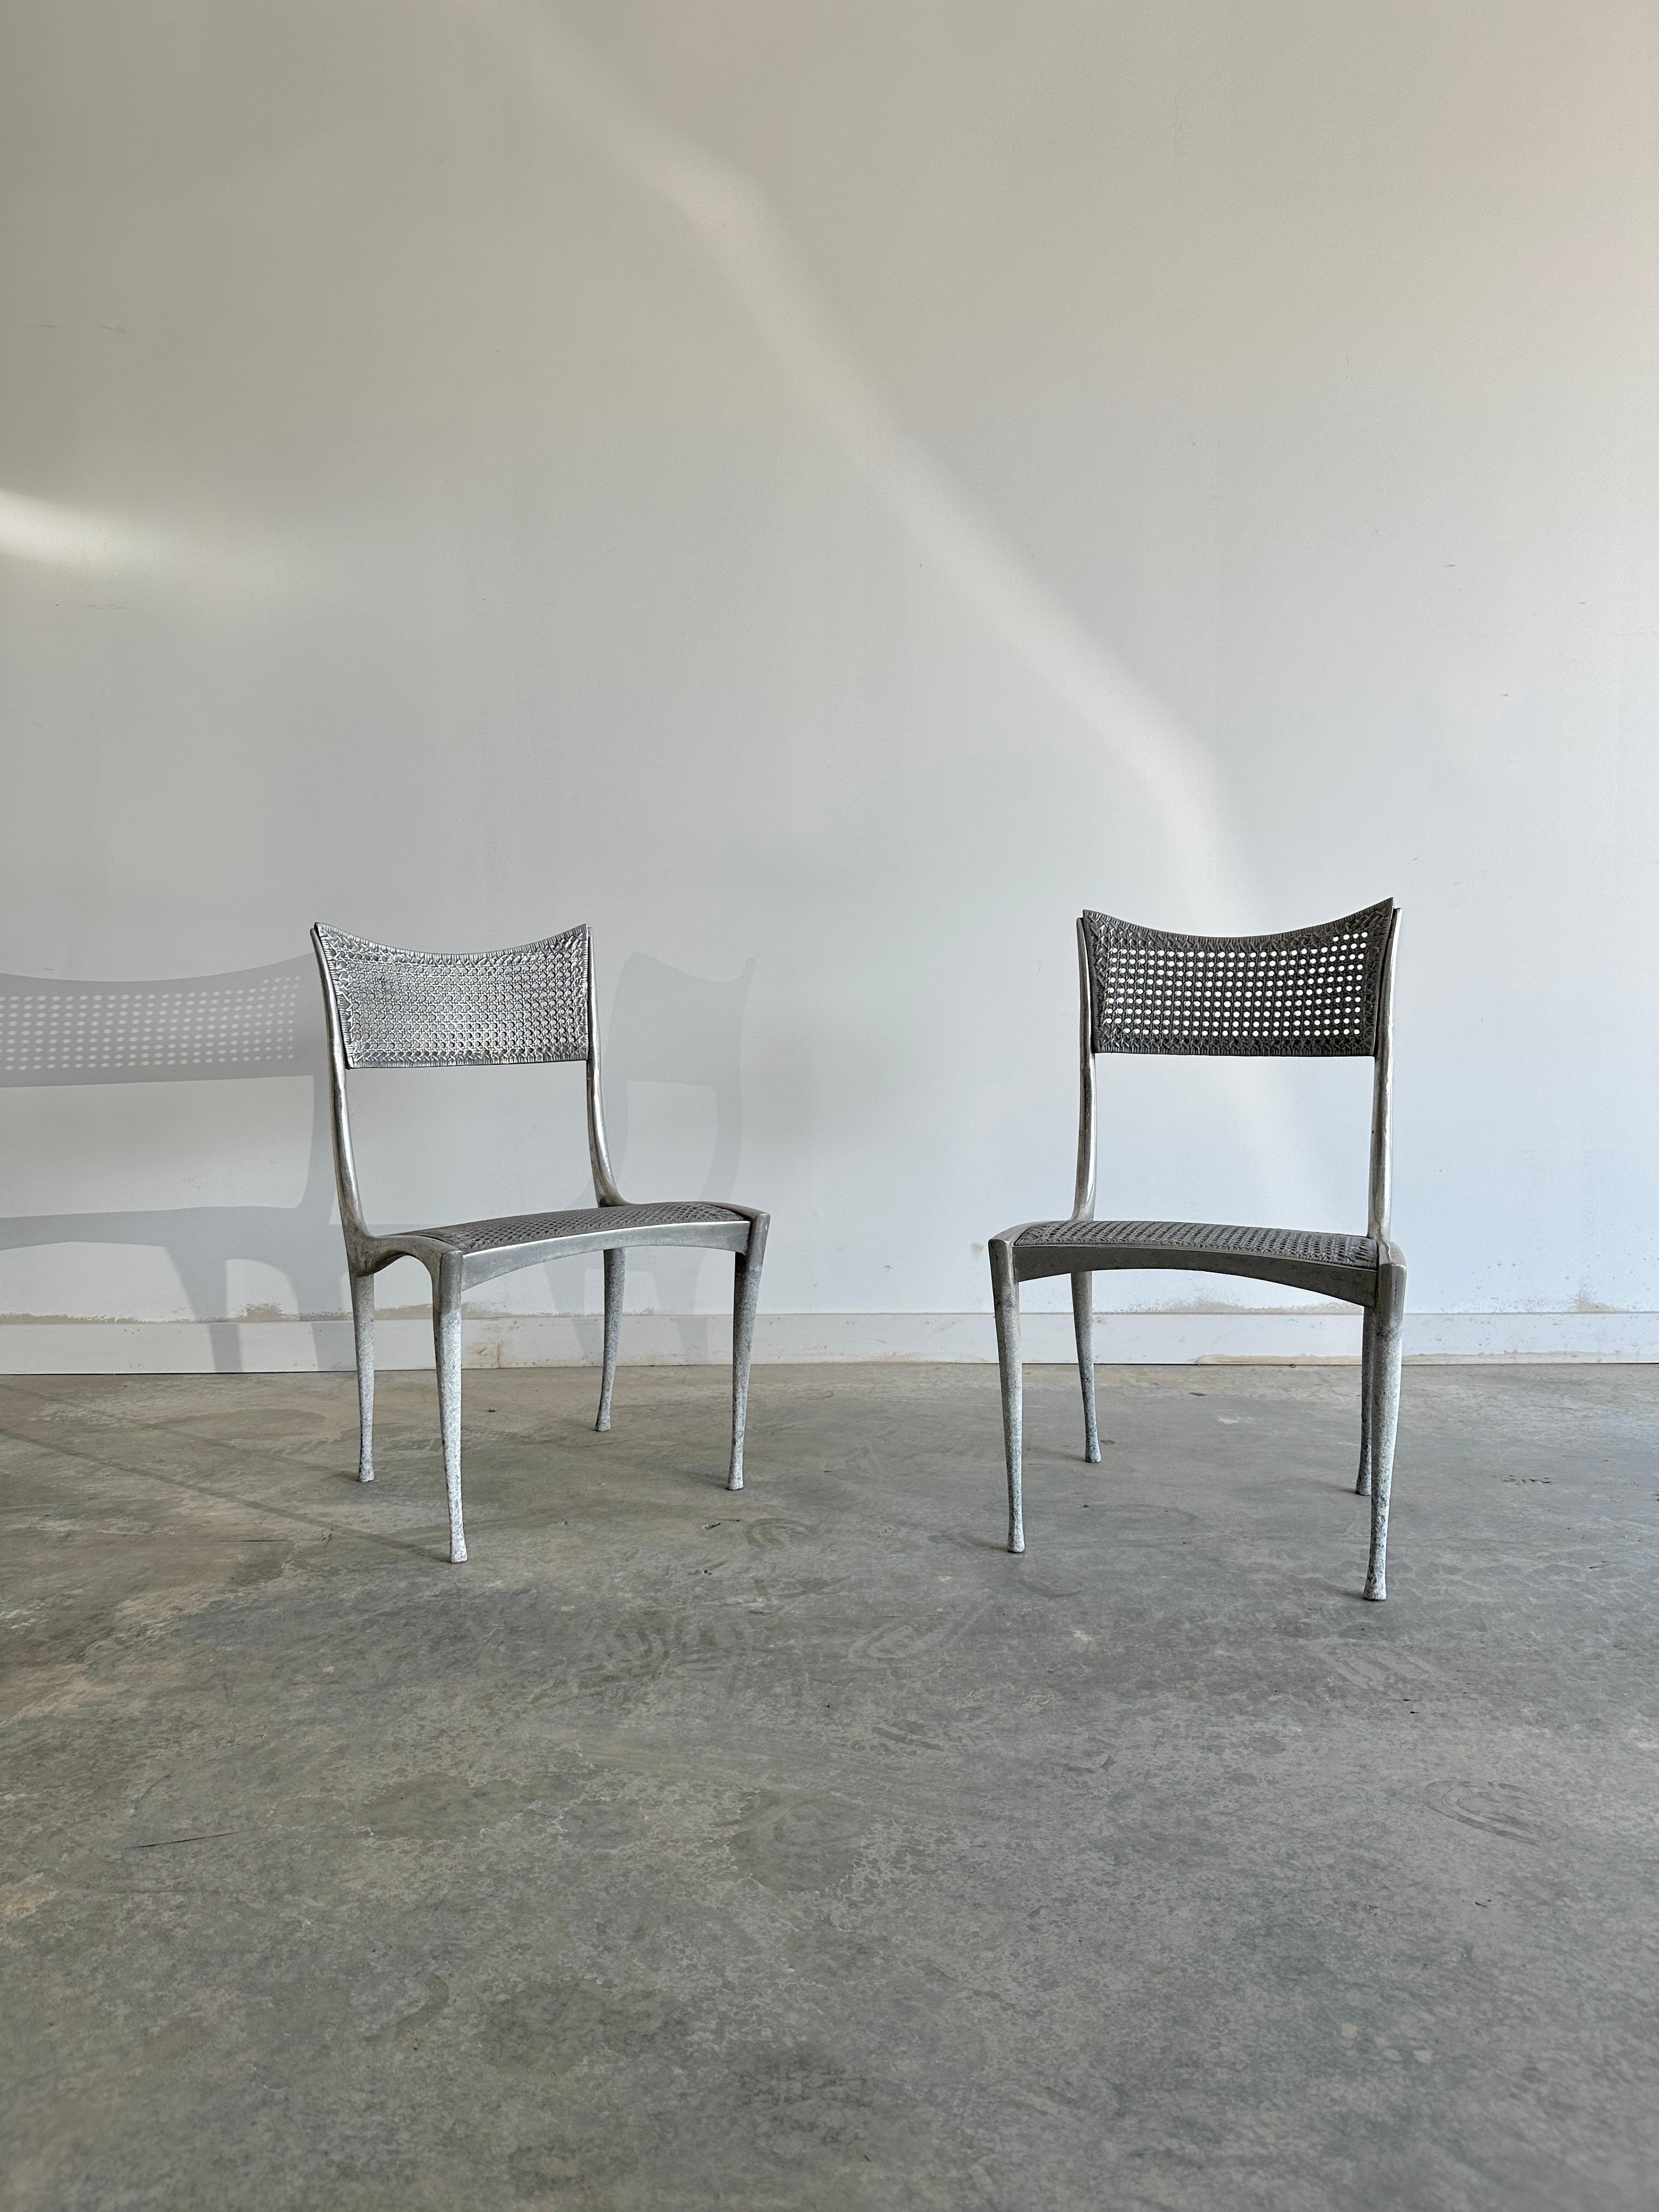 Der Gazelle-Stuhl wurde 1958 von Dan Johnson als Teil einer Serie von Stühlen entworfen, die Johnson während und nach der Fertigstellung eines Auftrags zur Gestaltung einer Wohnung in Rom entwickelte. Johnson beauftragte italienische Handwerker mit